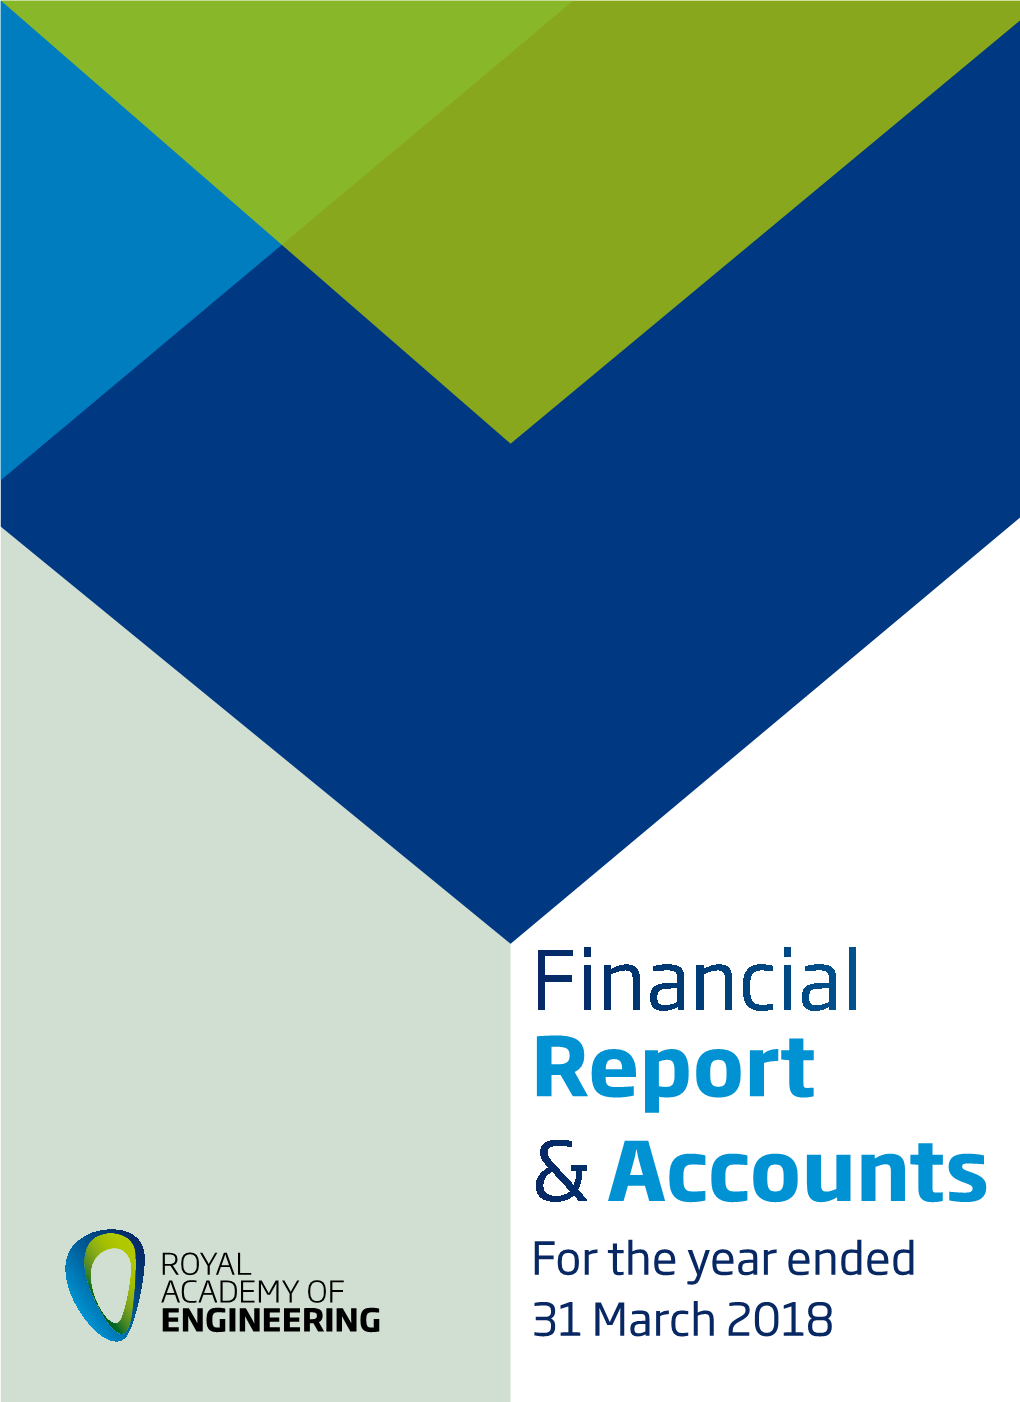 Financial Report & Accounts